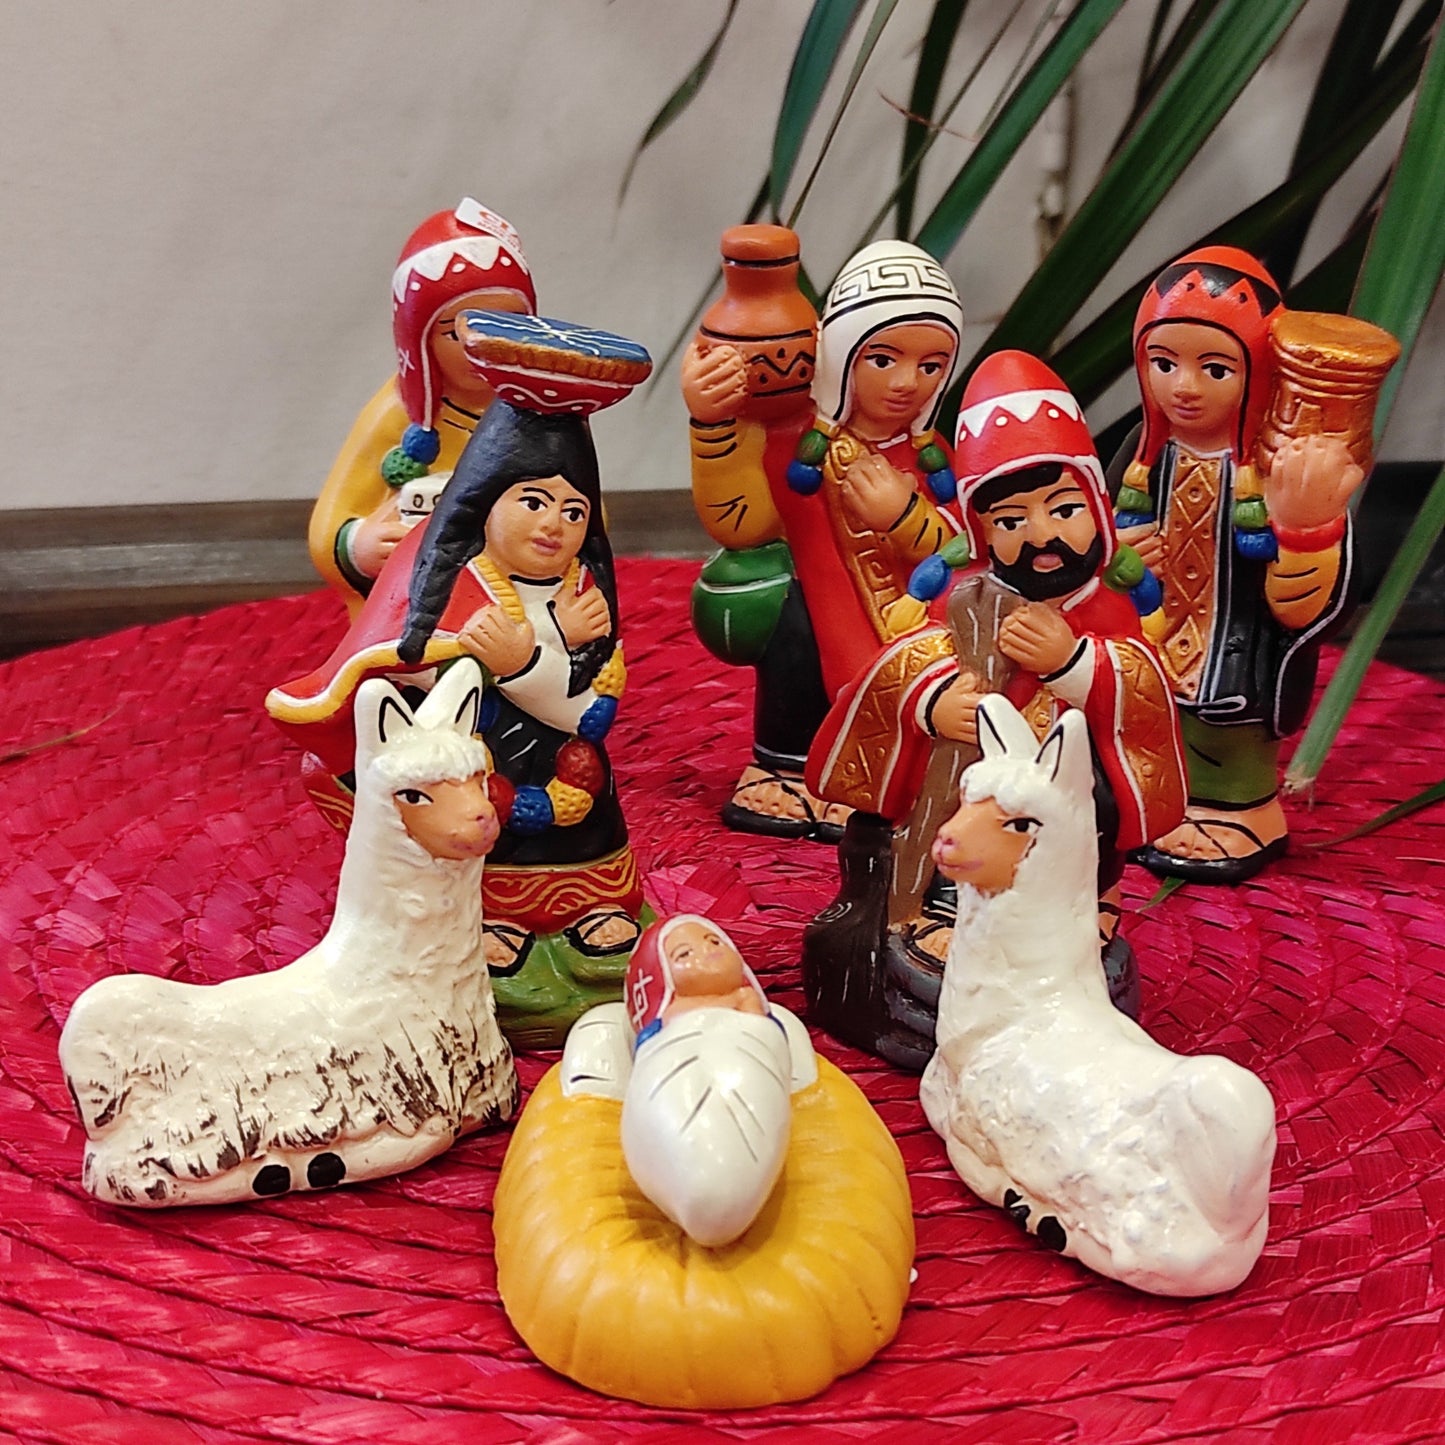 Presepe dal mondo in terracotta con dolci personaggi fatti e dipinti a mano da artigiani in PerùIspirato agli antichi fasti peruviani riproduce i vestiti e i copricapo tradizionali